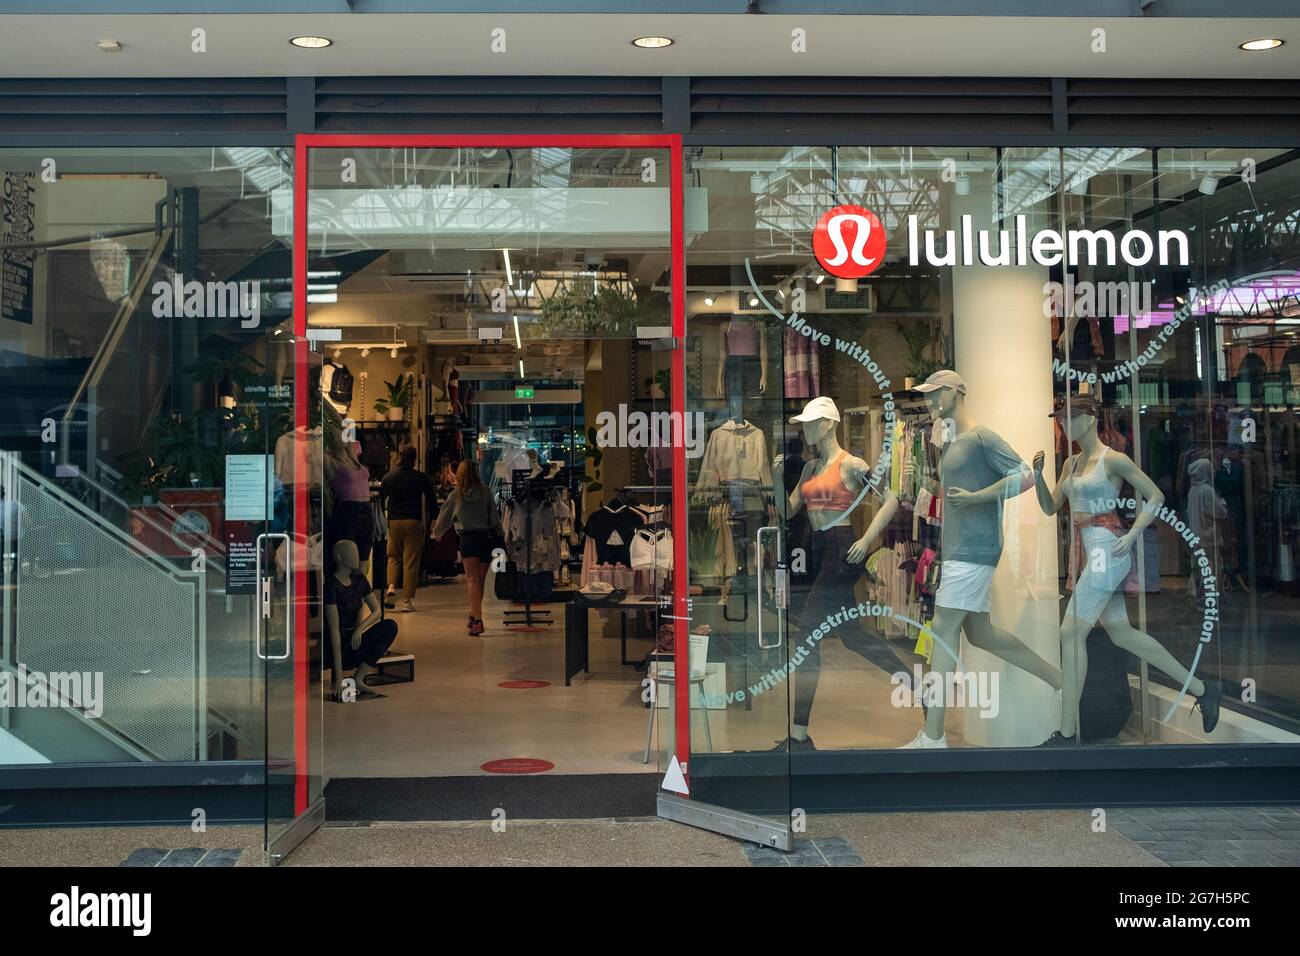 London - Juli 2021: Lululemon Store im Spitalfields Markt. Eine Marke für aktive Bekleidung Stockfoto